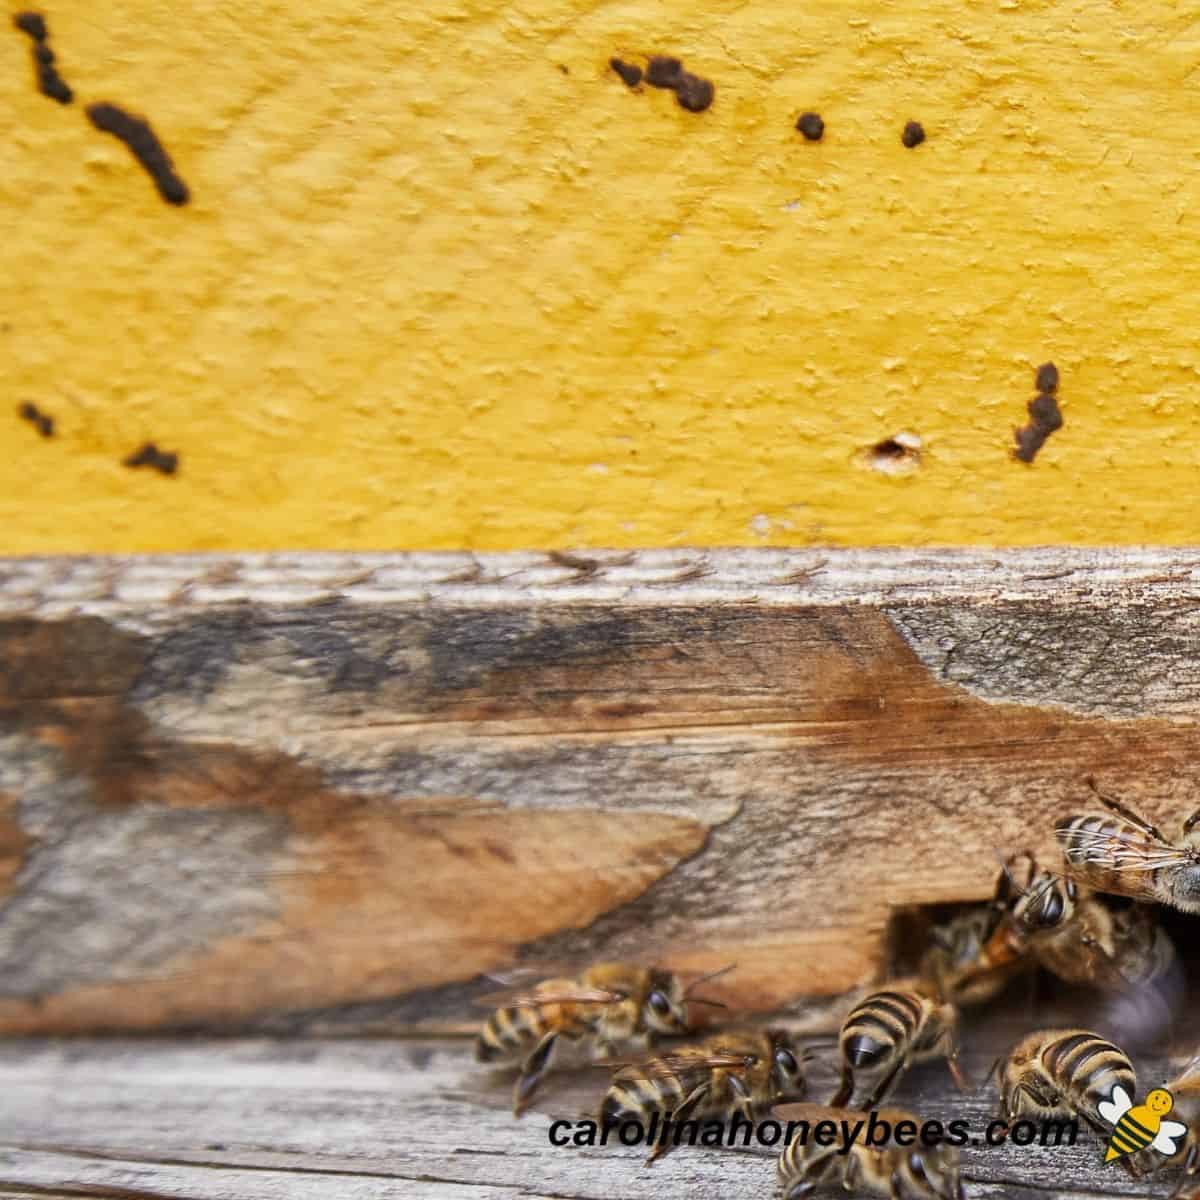 camala jones recommends honey bee scat queen pic